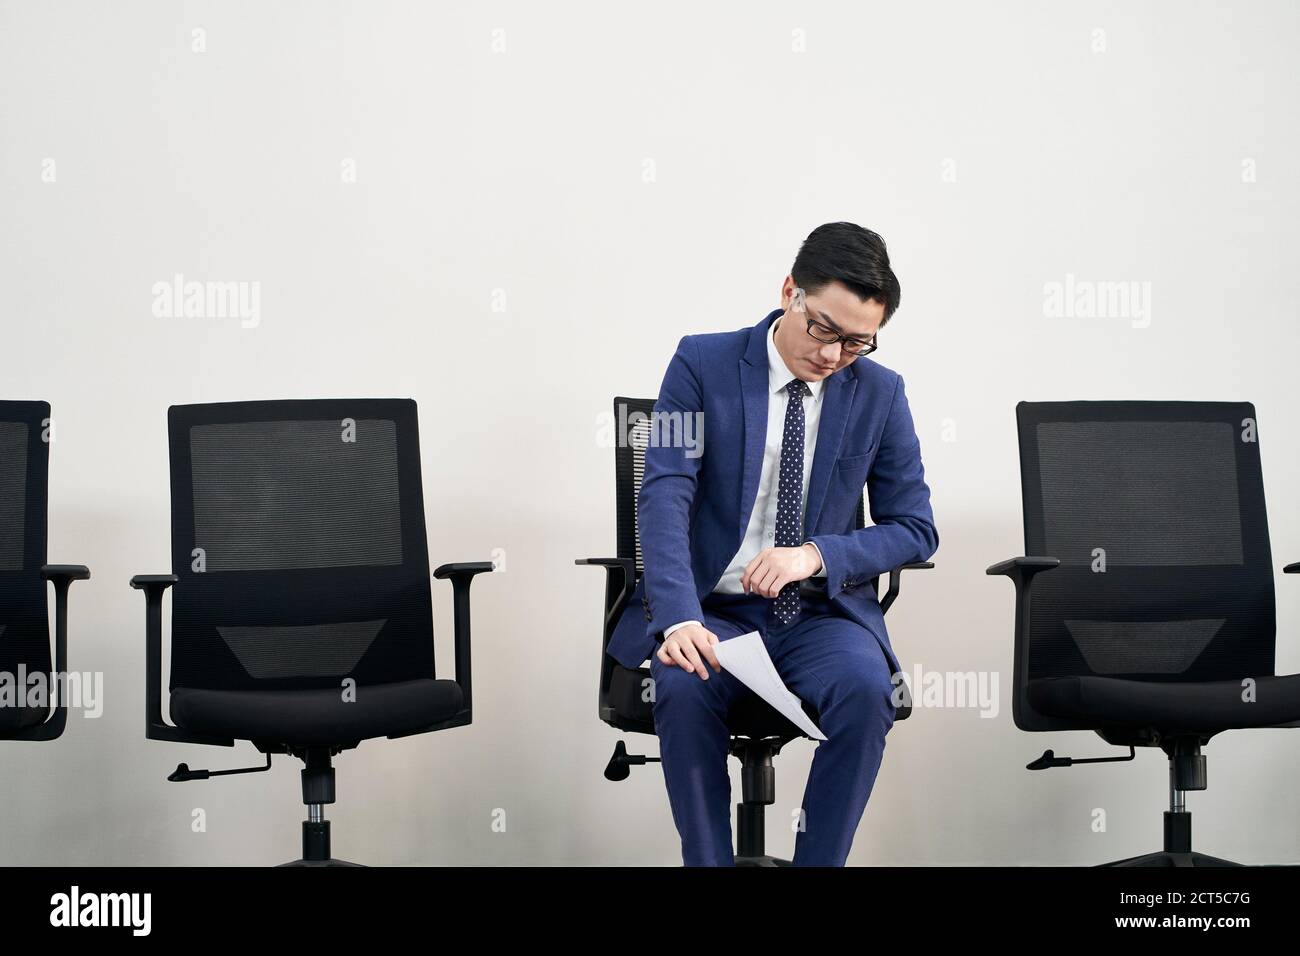 jeune asiatique homme chercheur d'emploi assis dans une chaise avec tête down semble frustré et vaincu Banque D'Images